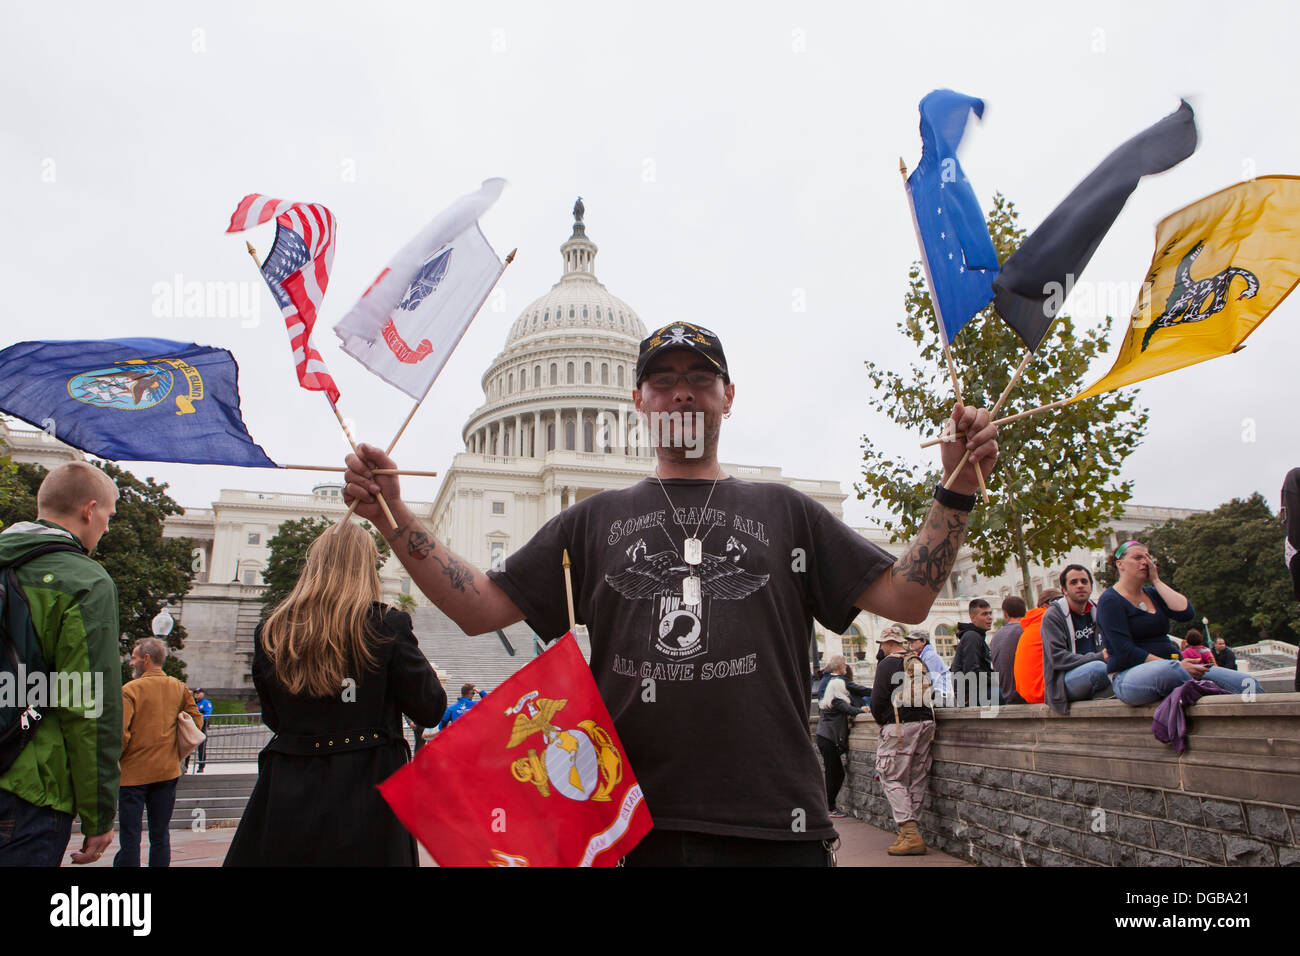 Mann winken U.S. militärische Fahnen vor dem US Capitol Gebäude - Washington, DC USA Stockfoto